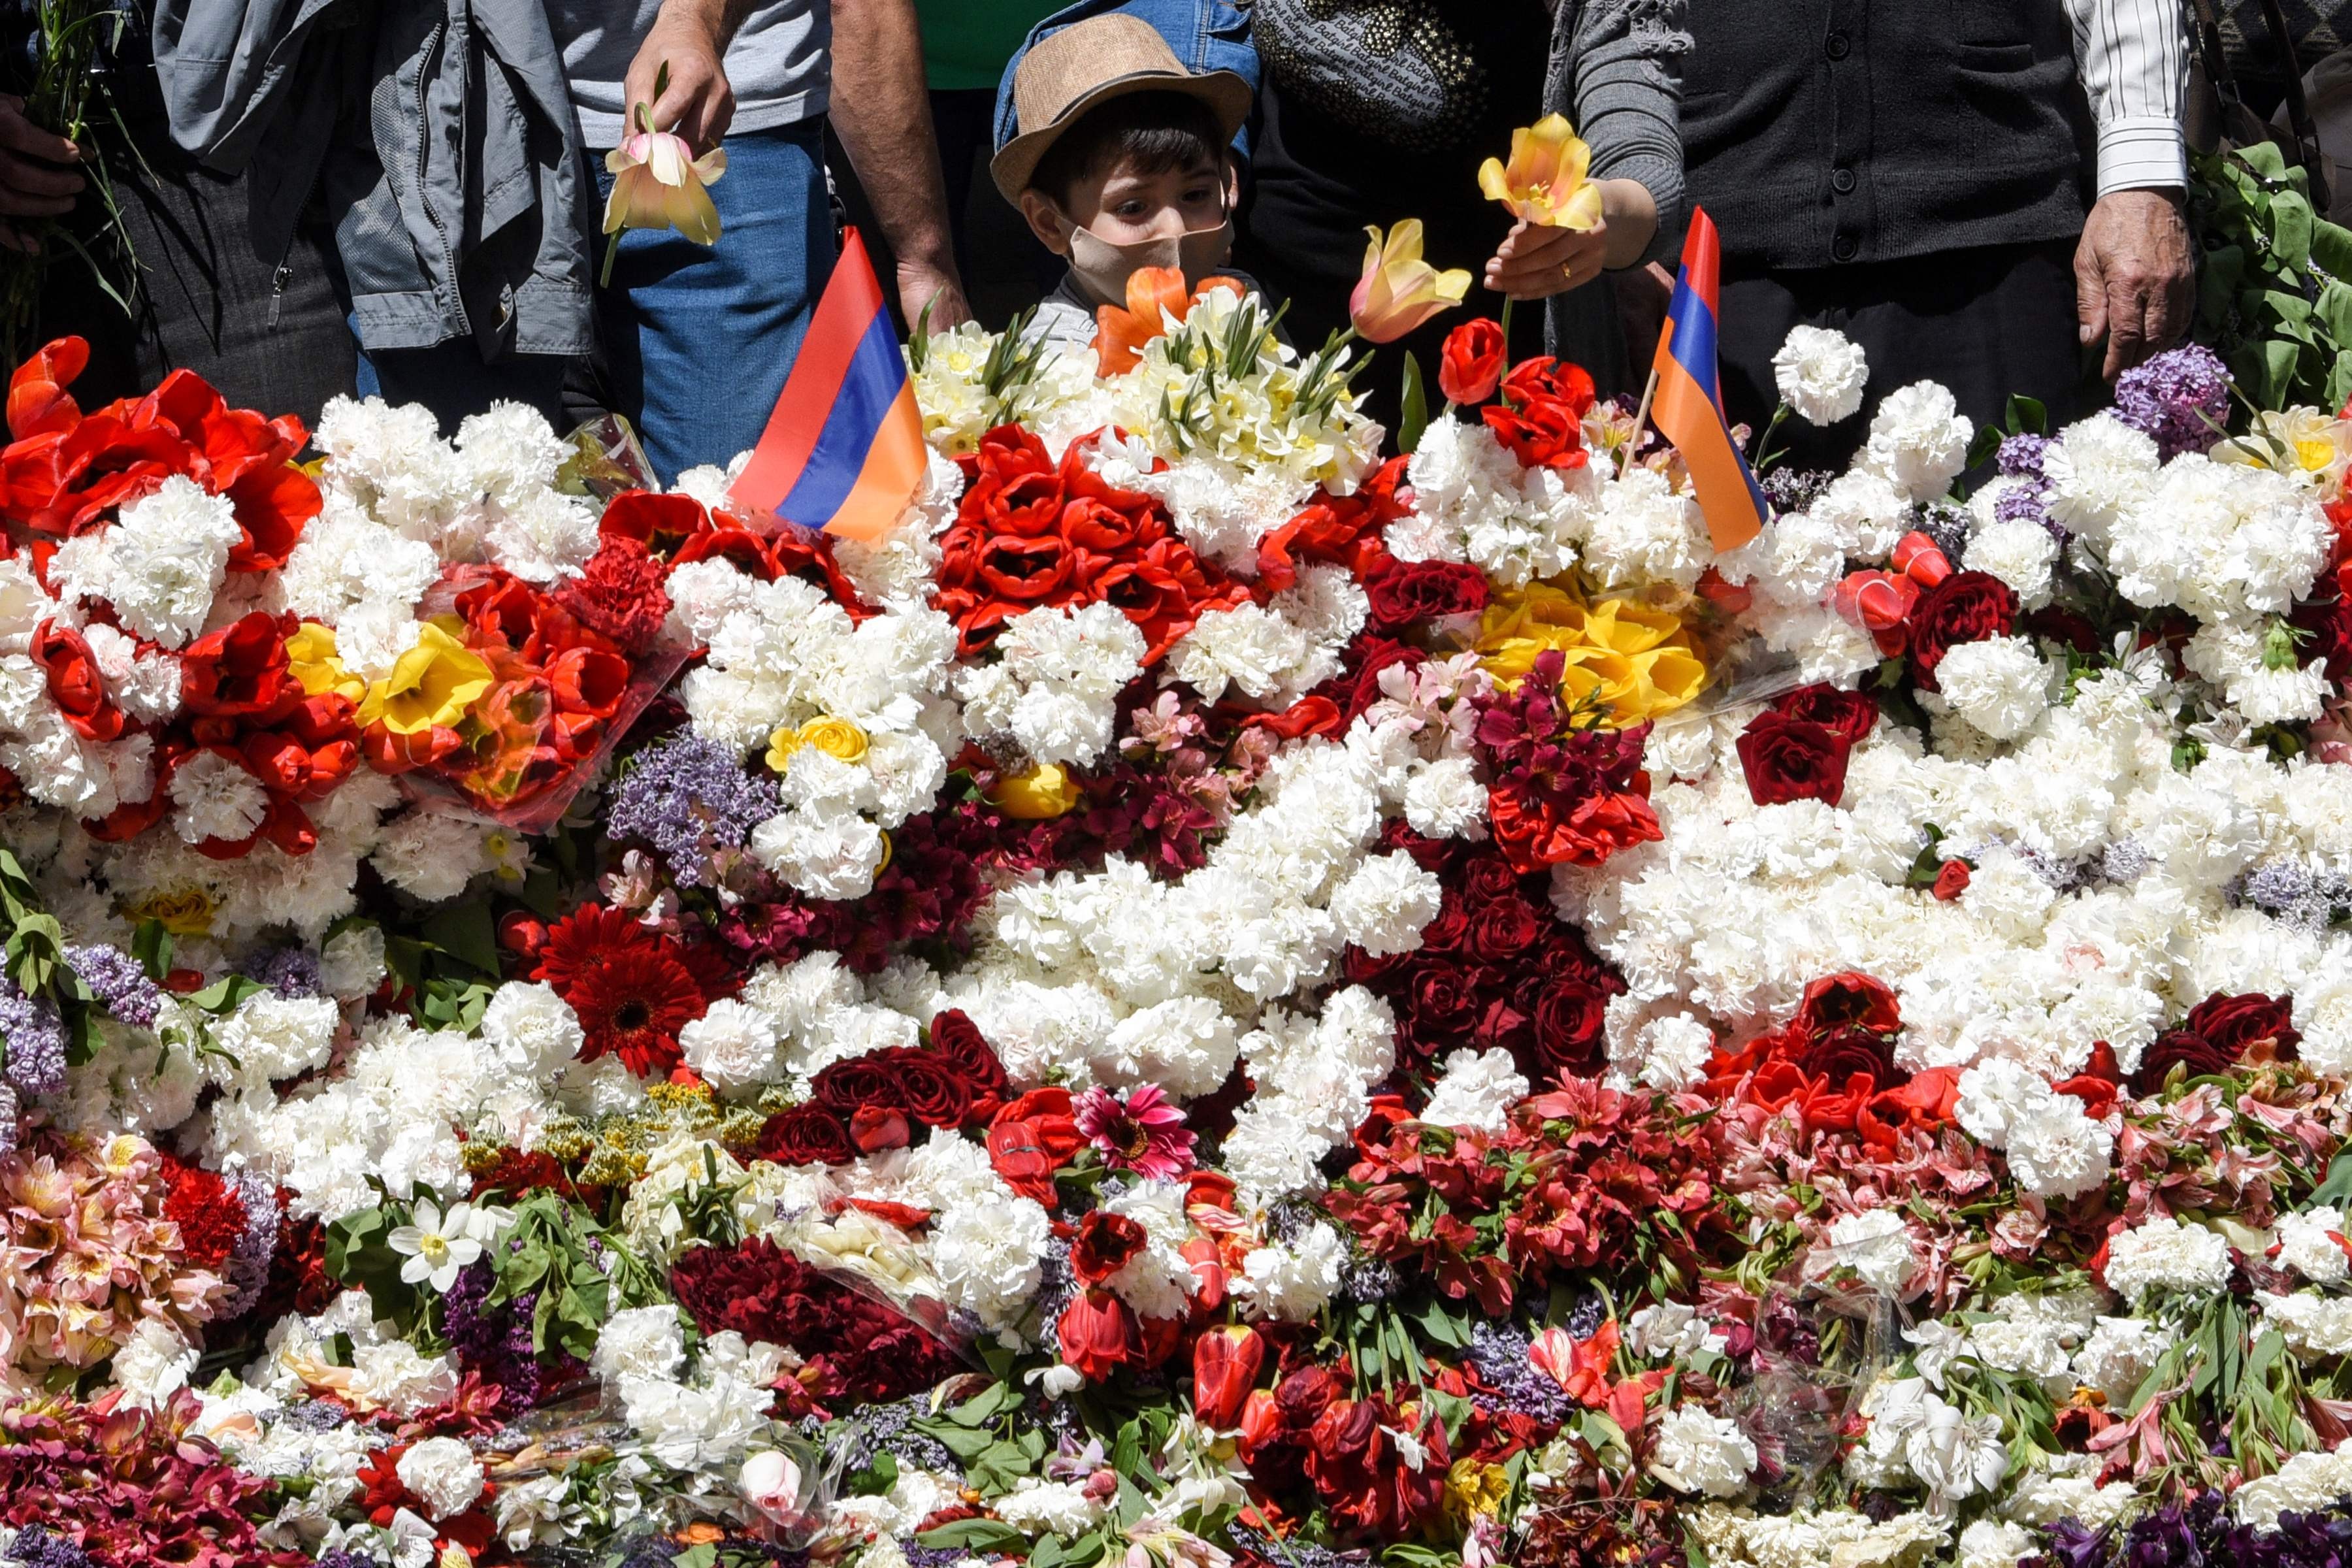 Menino deposita flores em memorial para armênios mortos no Império Otomano durante a Primeira Guerra Mundial, em Ierevan, capital da Armênia 